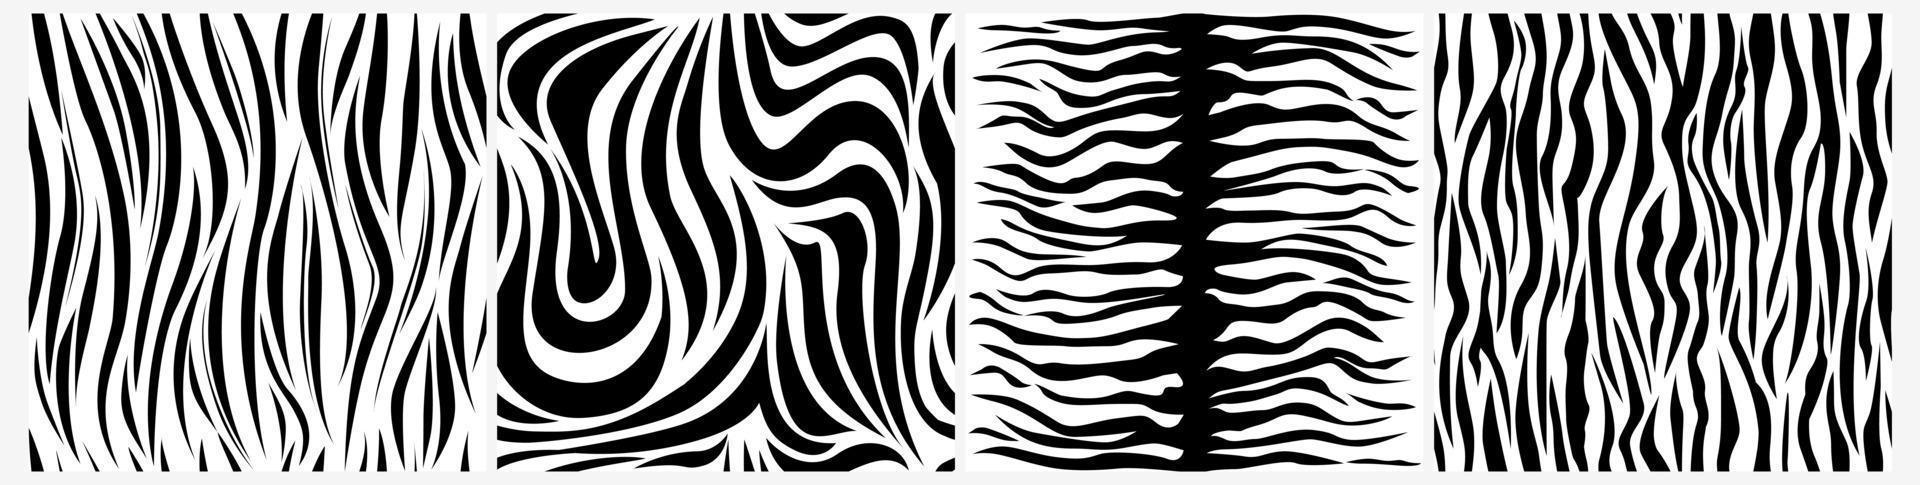 camouflage noir blanc texturé, lignes graphiques, style zèbre abstrait, populaire et psychédélique. peut être utilisé pour l'impression sur tissu, dans les papiers peints, les illustrations. isolé sur fond blanc. vecteur